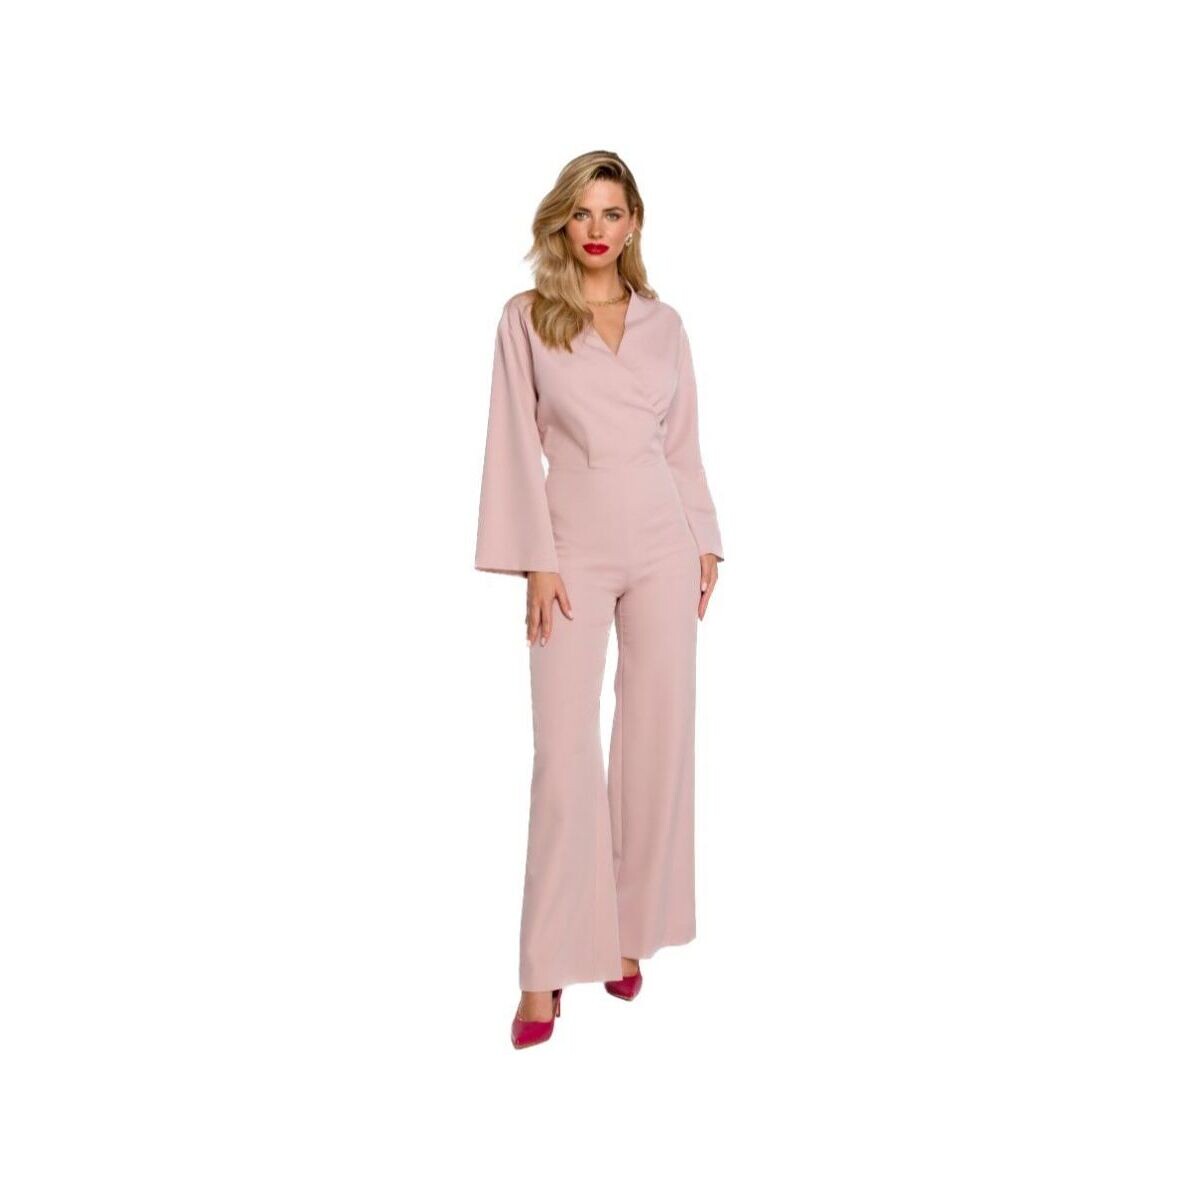 Textil Ženy Overaly / Kalhoty s laclem Makover Dámský overal Likatan K147 světle růžová Růžová